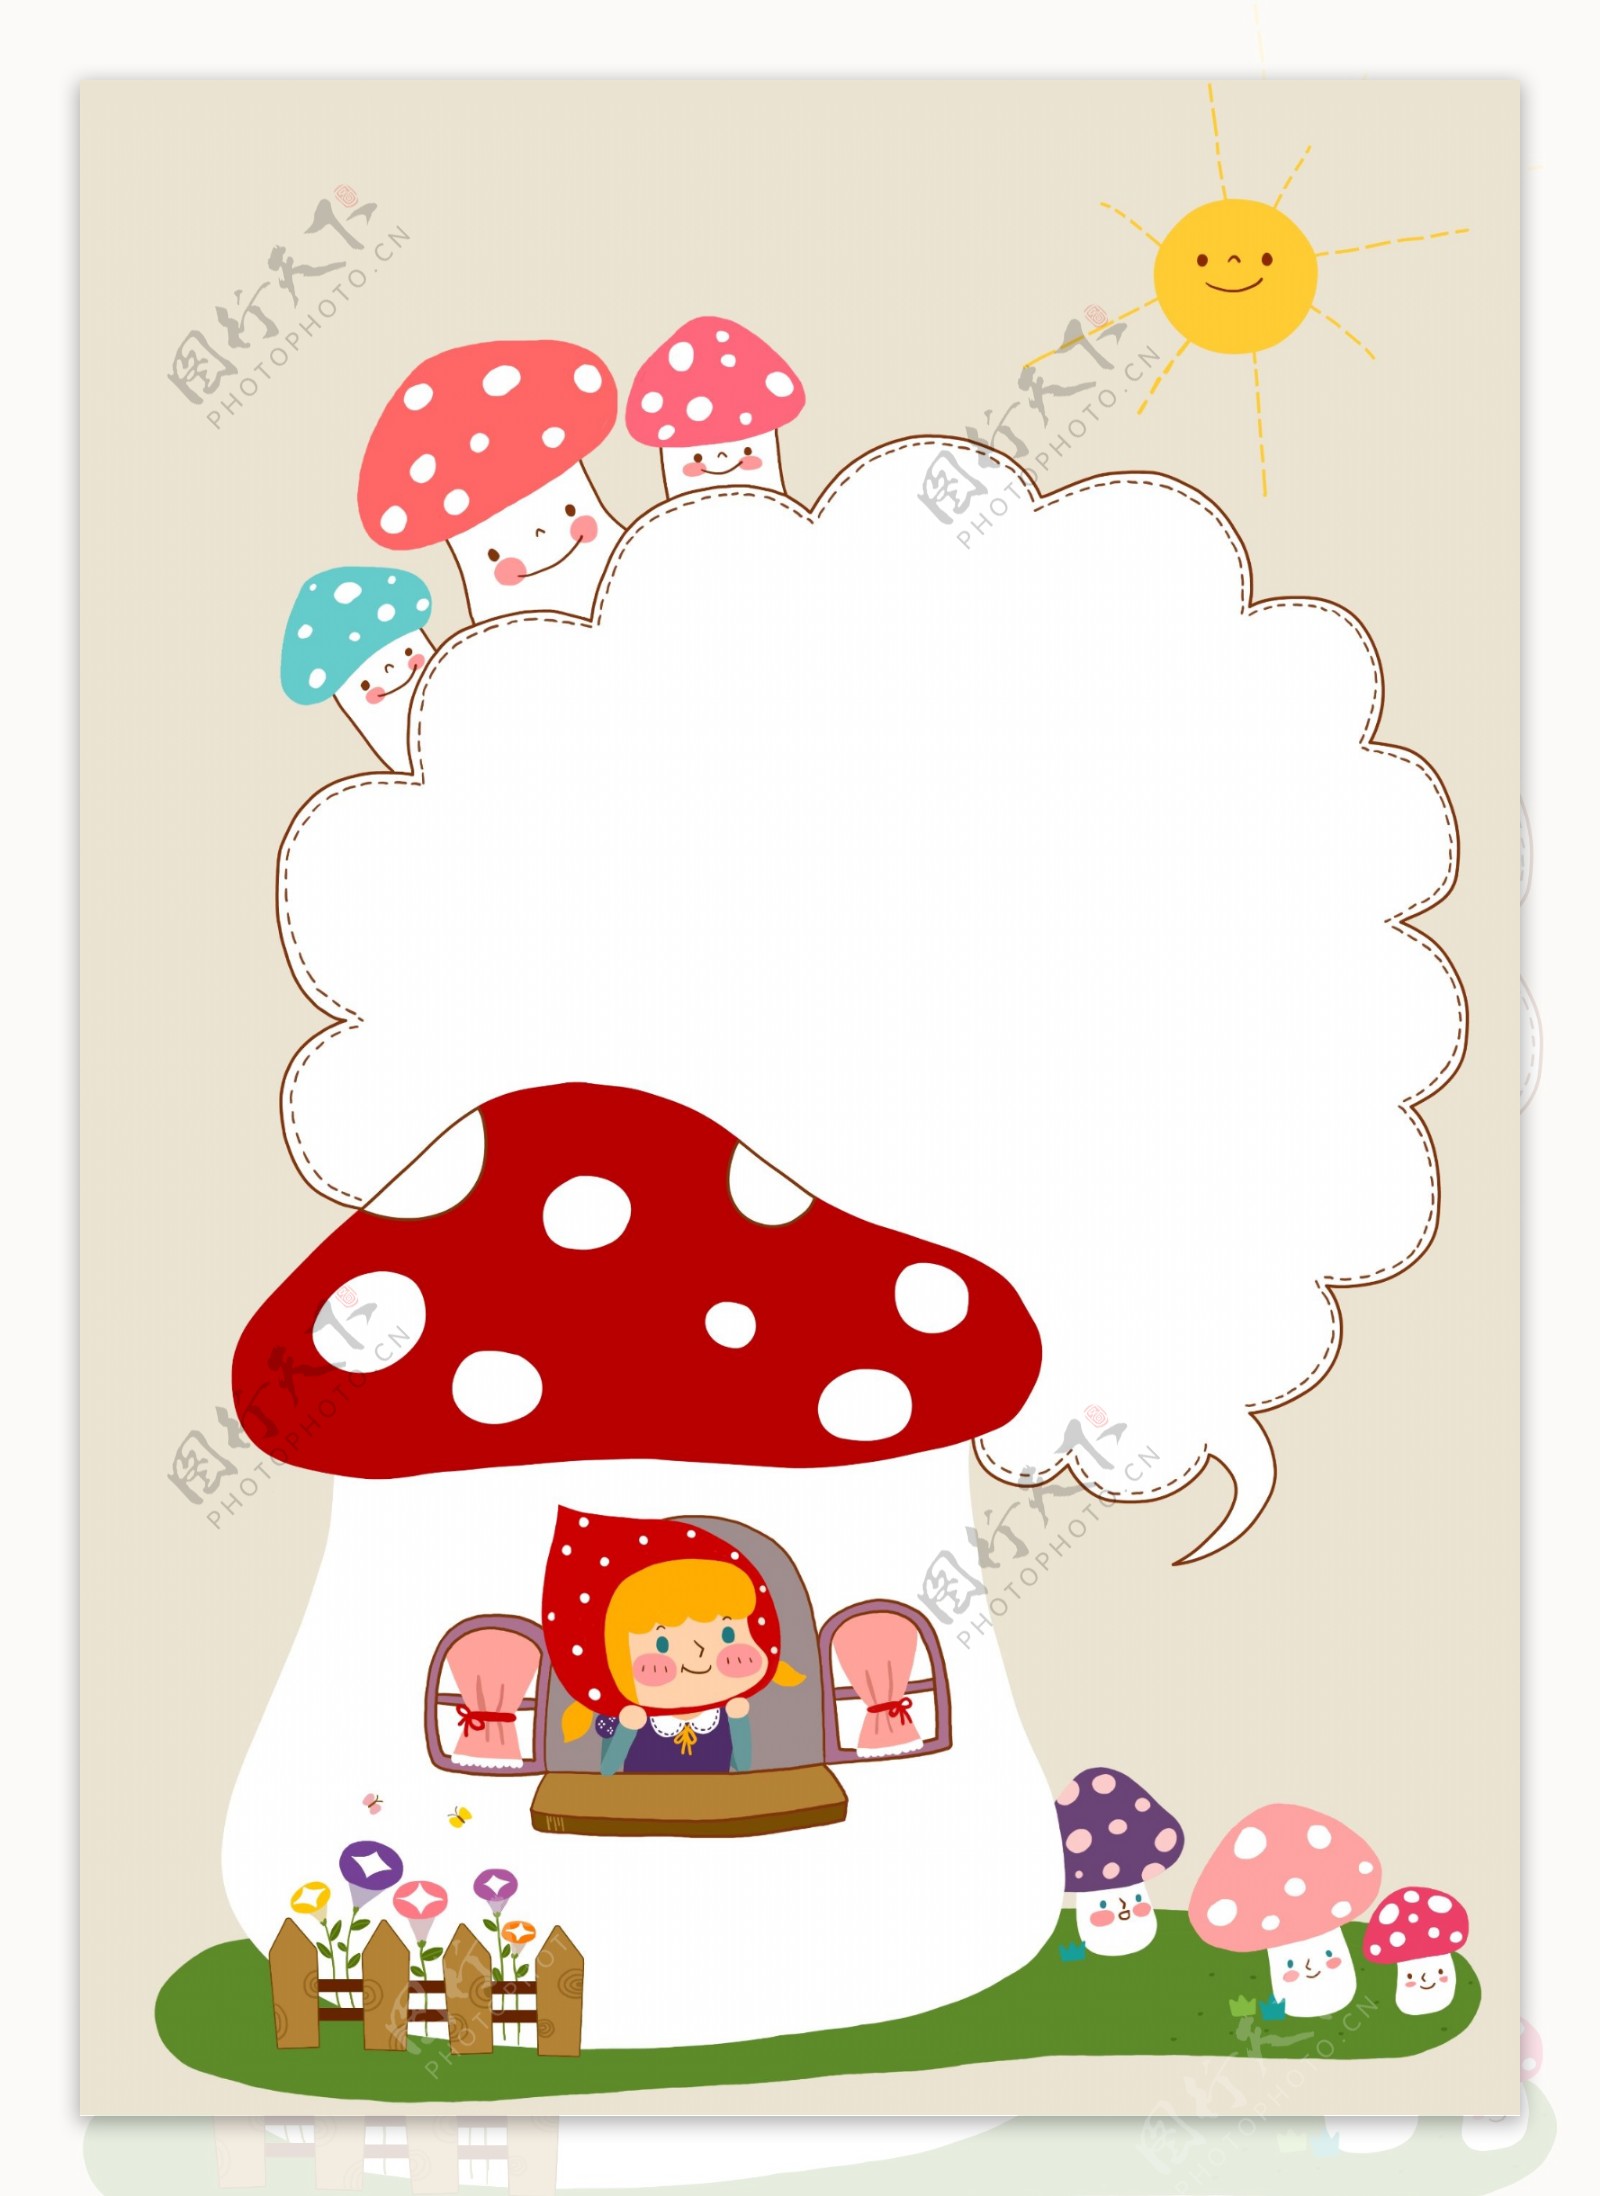 蘑菇房子和小红帽对话框